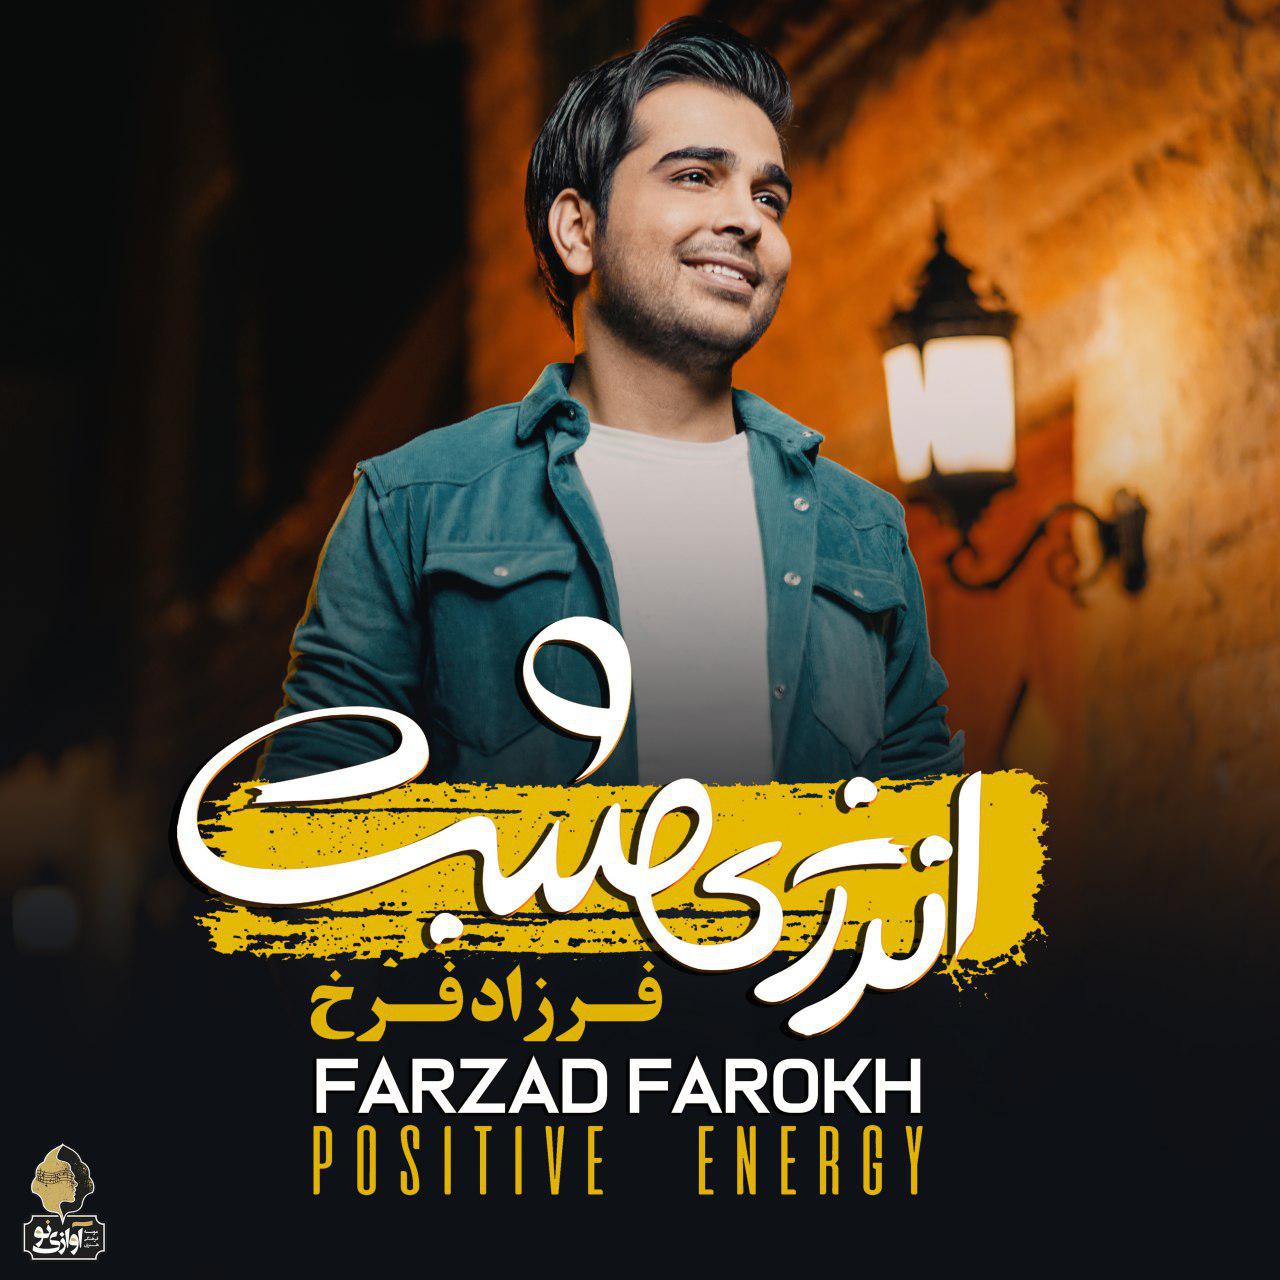  دانلود آهنگ جدید فرزاد فرخ - دیوانگی | Download New Music By Farzad Farokh - Divanegi